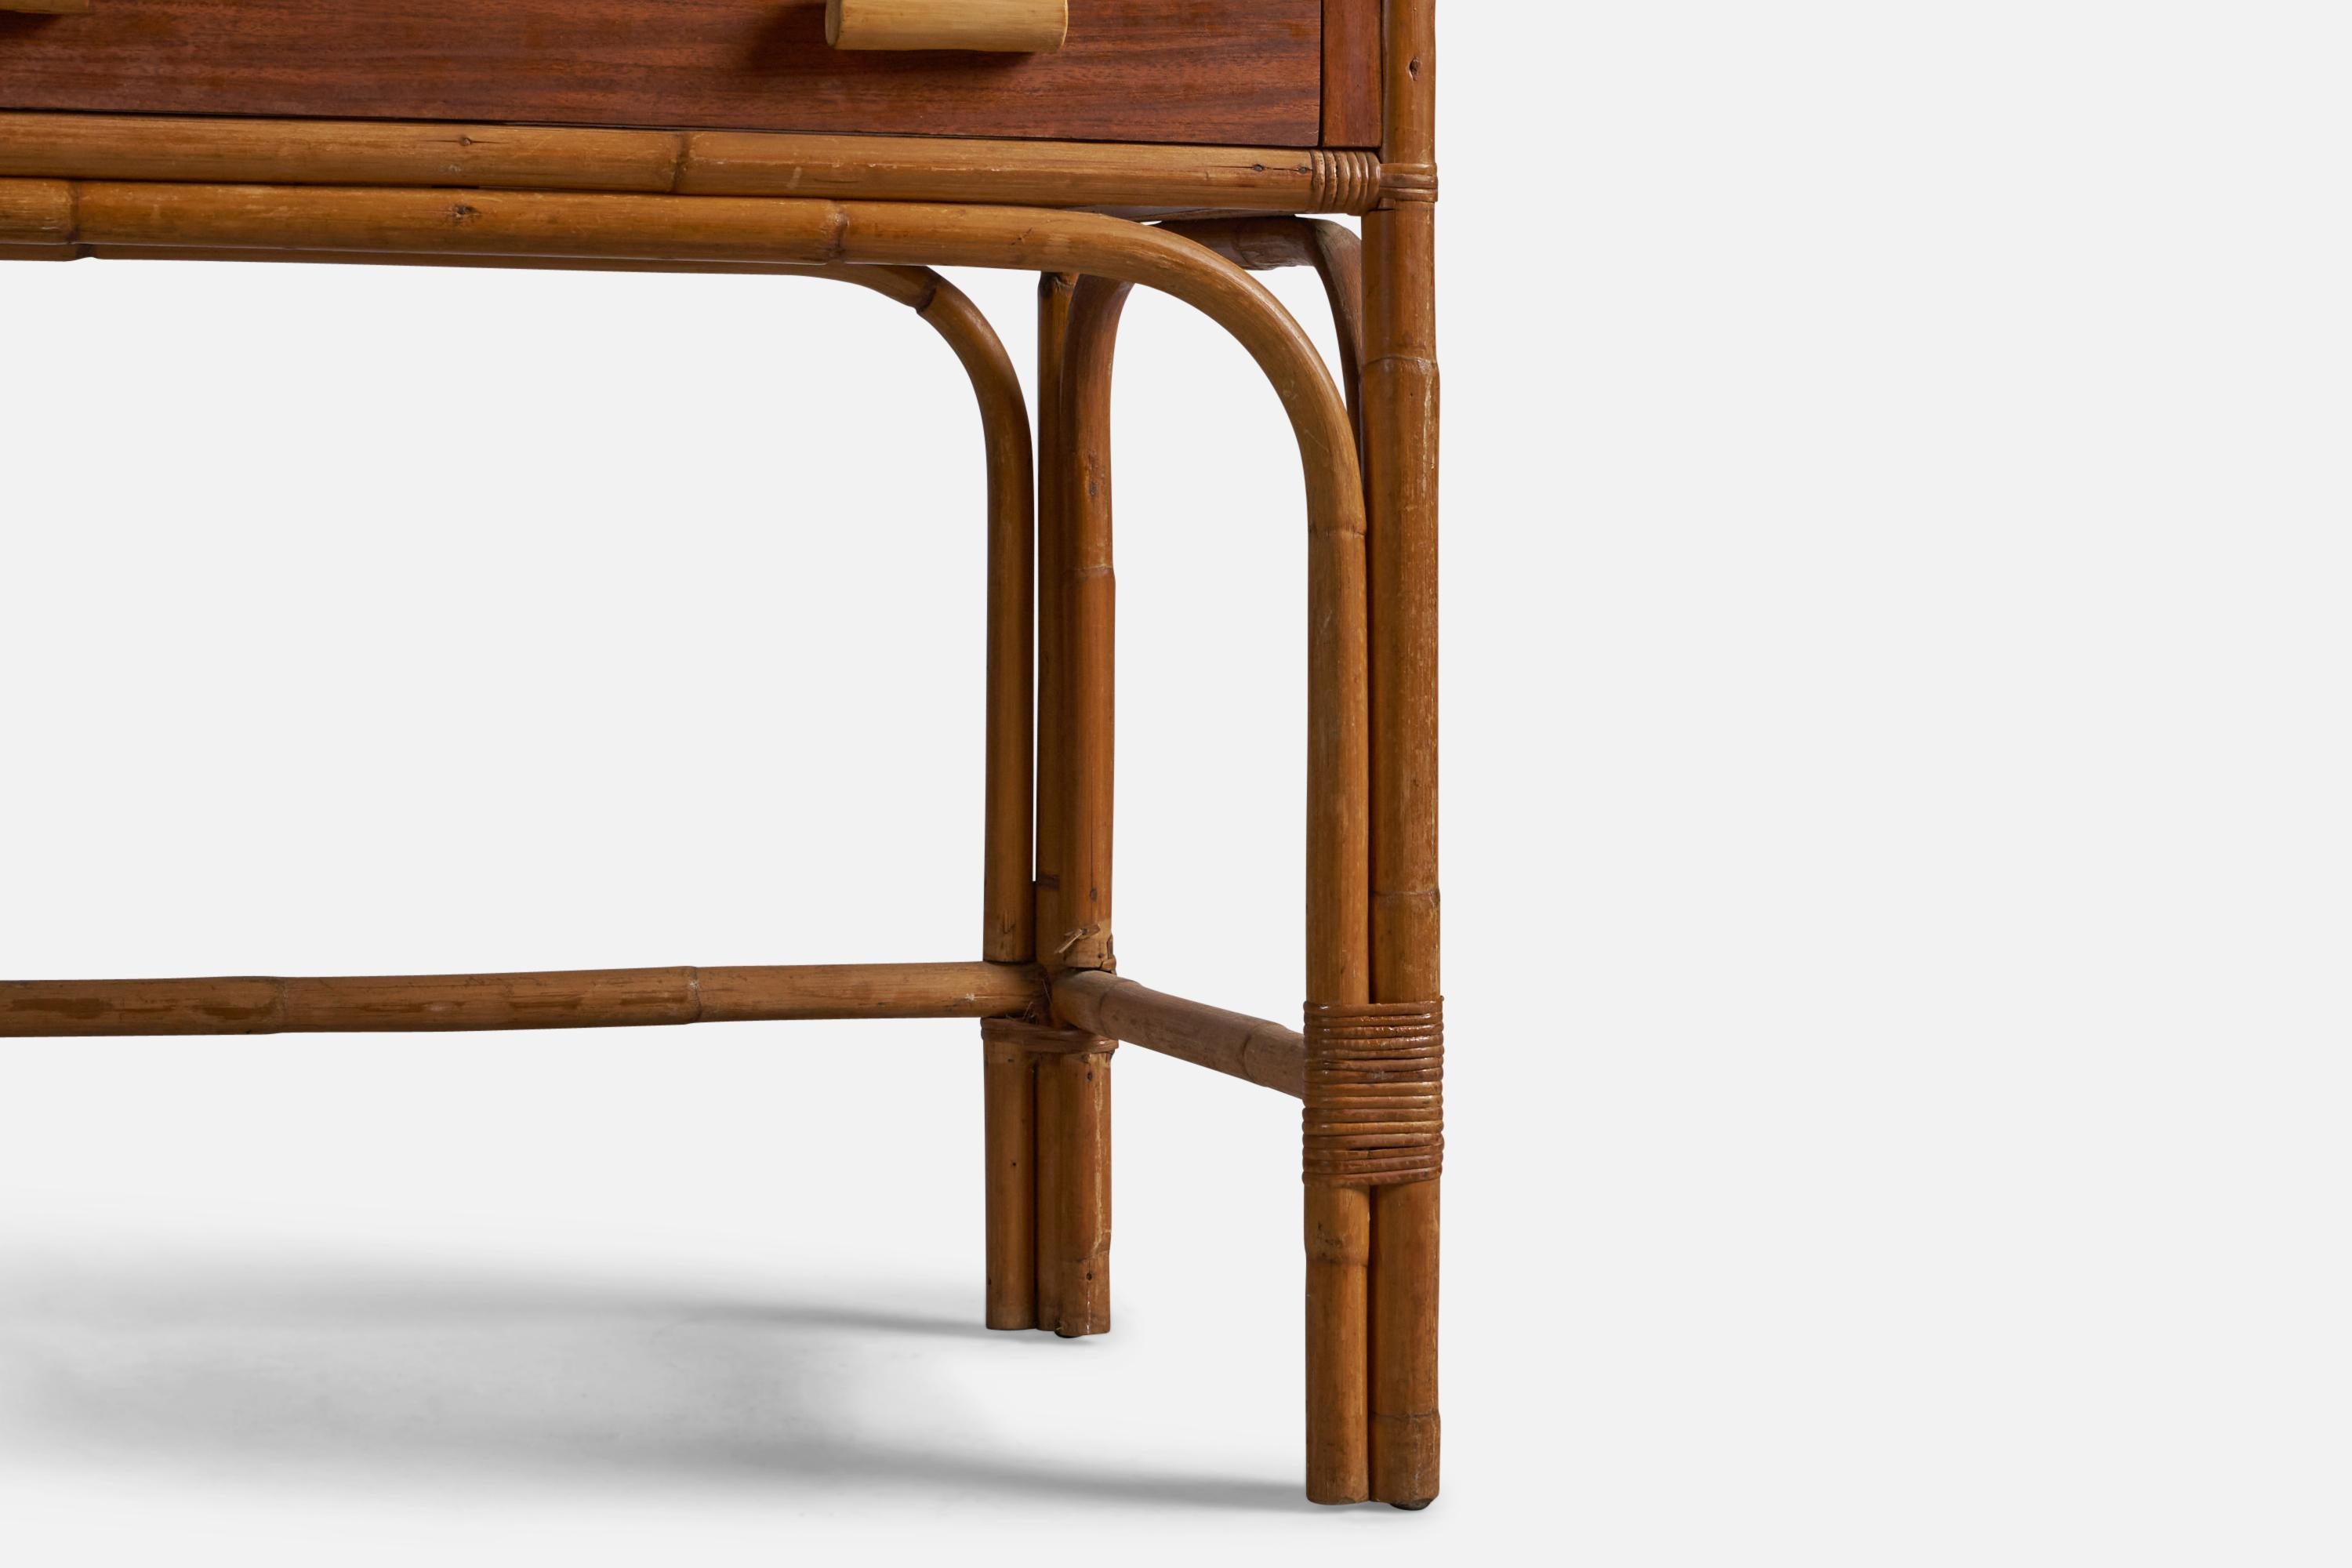 Mid-20th Century American Designer, Desk, Oak, Bamboo, Rattan, USA, 1950s For Sale